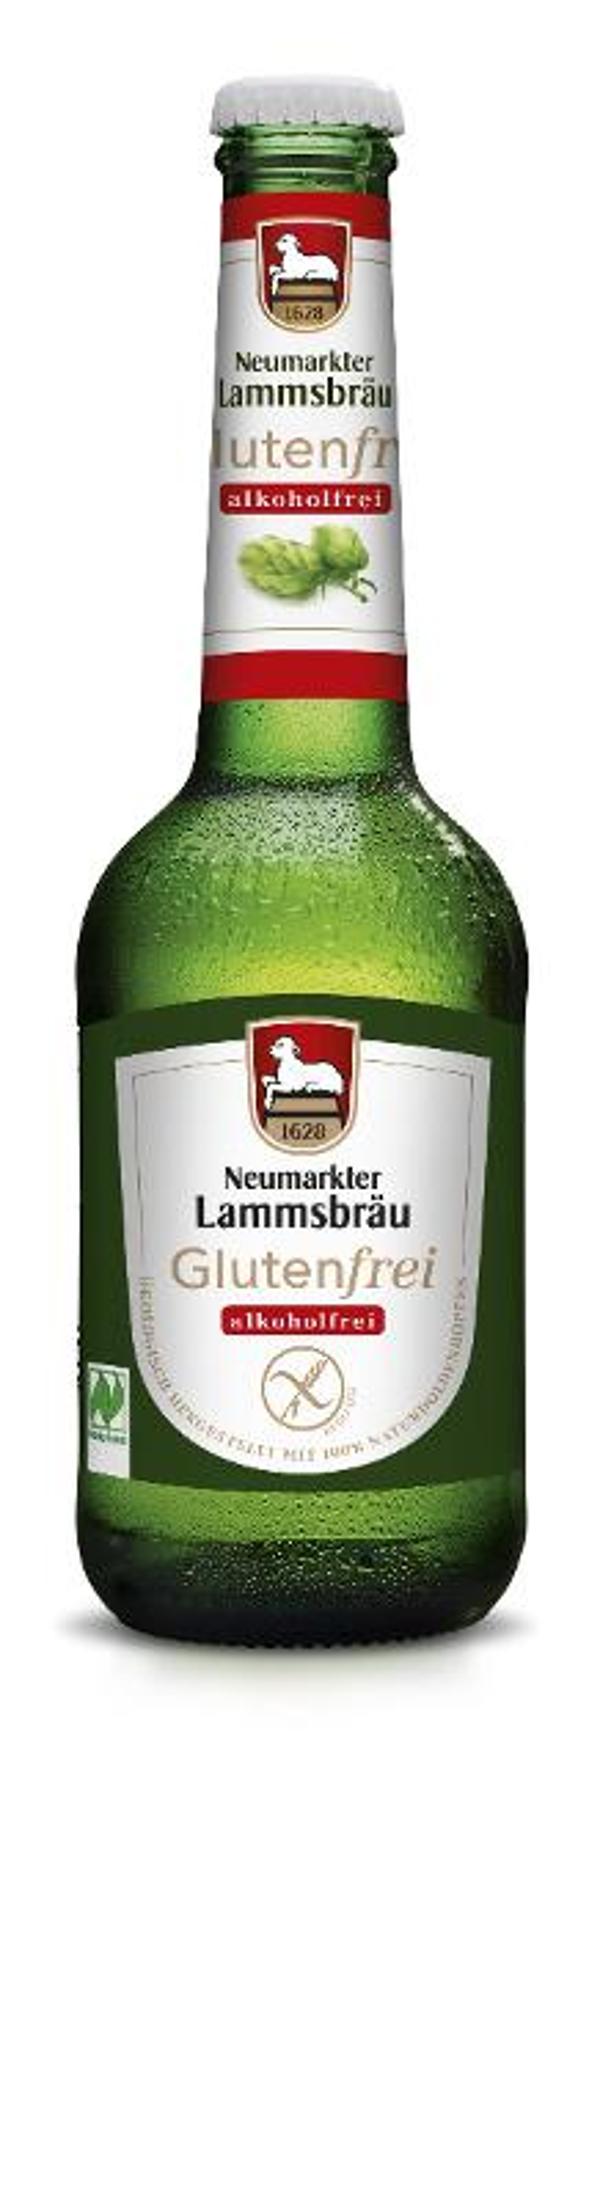 Produktfoto zu Lammsbräu glutenfrei alk.frei